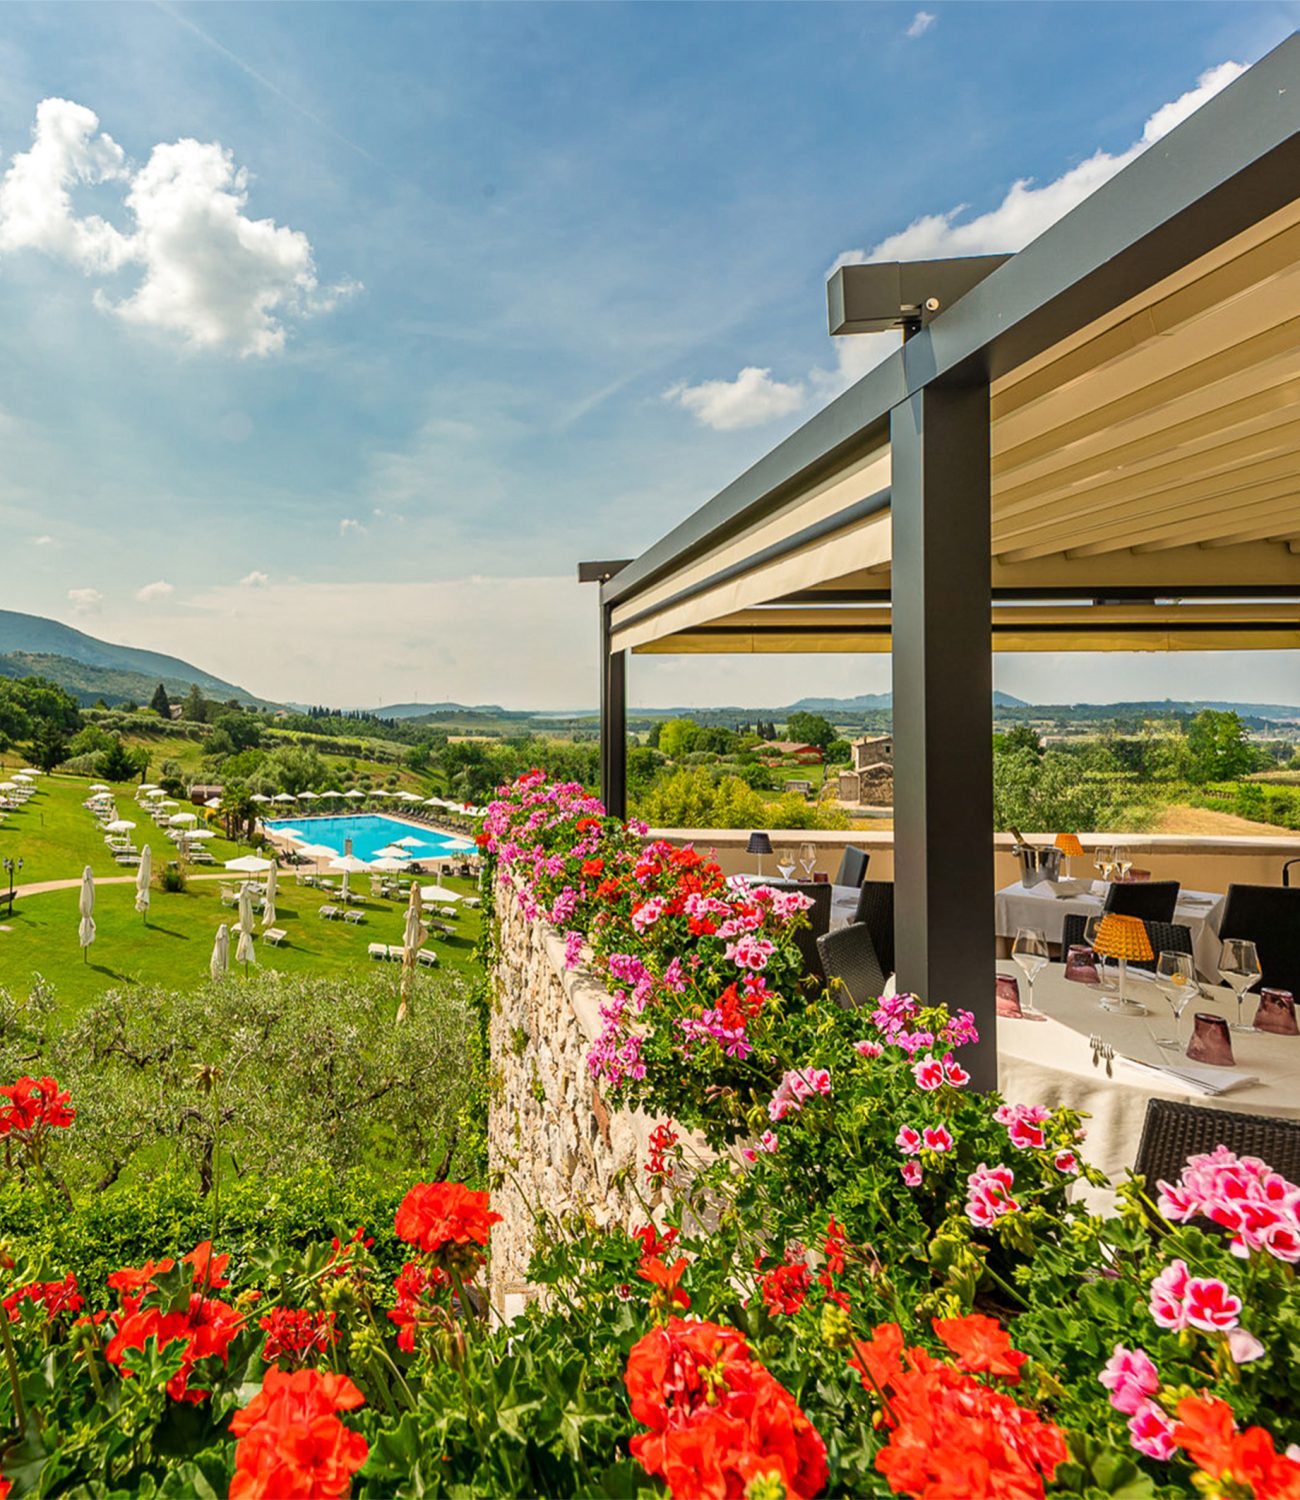 Villa-cariola-location-ristorante-lago-di-garda-terrazza-gourmet-terrace-